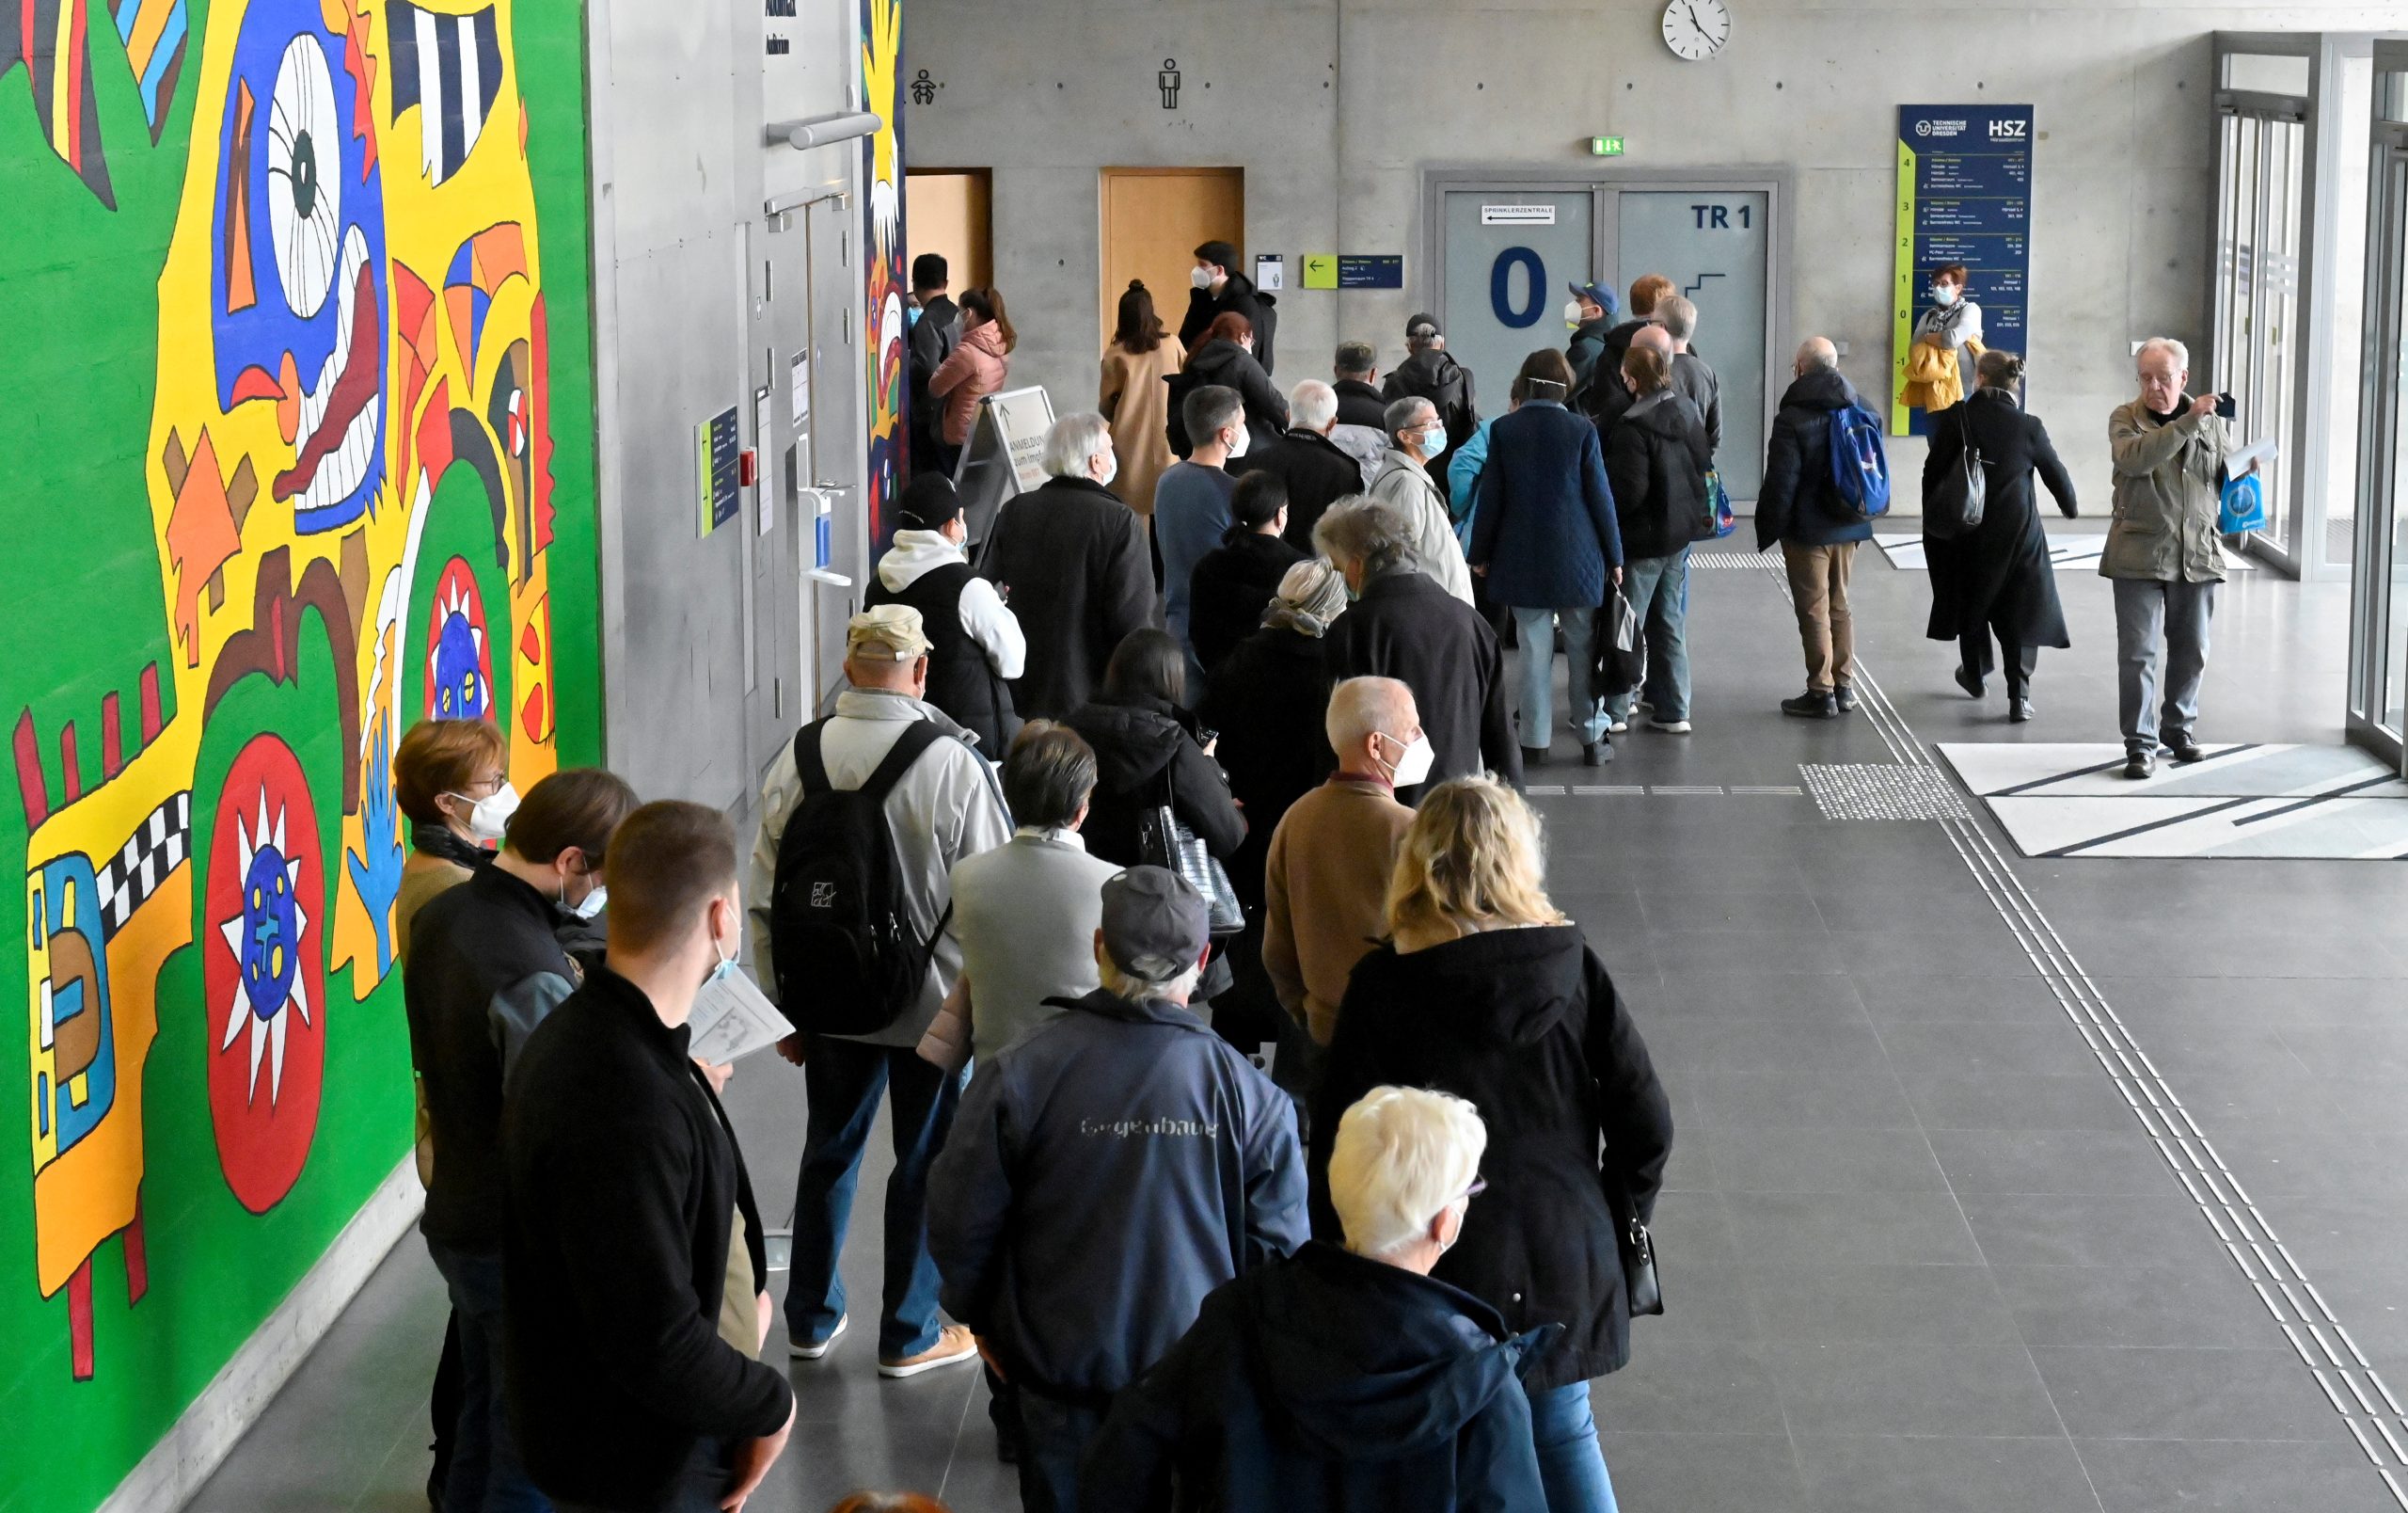 Personas hacen cola para vacunarse en un centro de vacunación temporal dentro del edificio del campus de la universidad Technische Universitaet en Dresden, Alemania, el 8 de noviembre de 2021. REUTERS / Matthias Rietschel